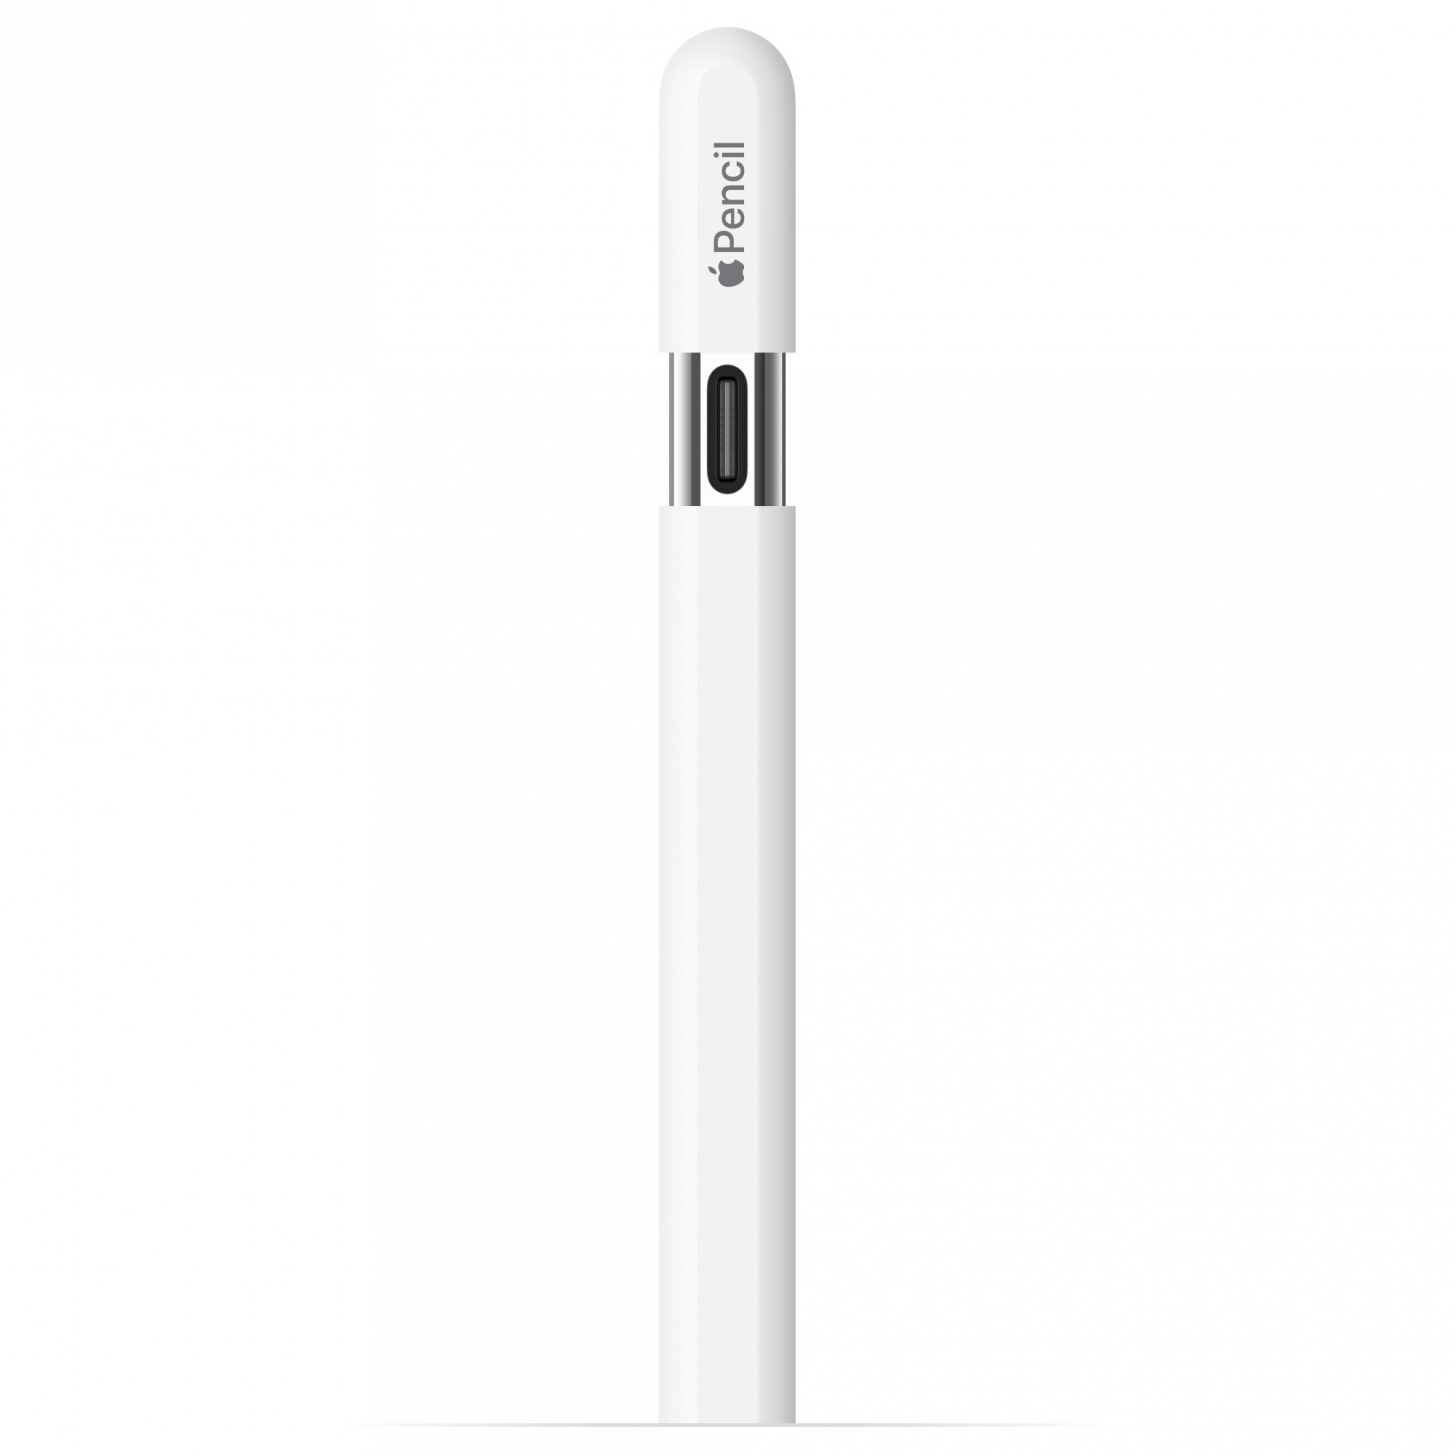 Compatibilidade com o Apple Pencil de primeira geração